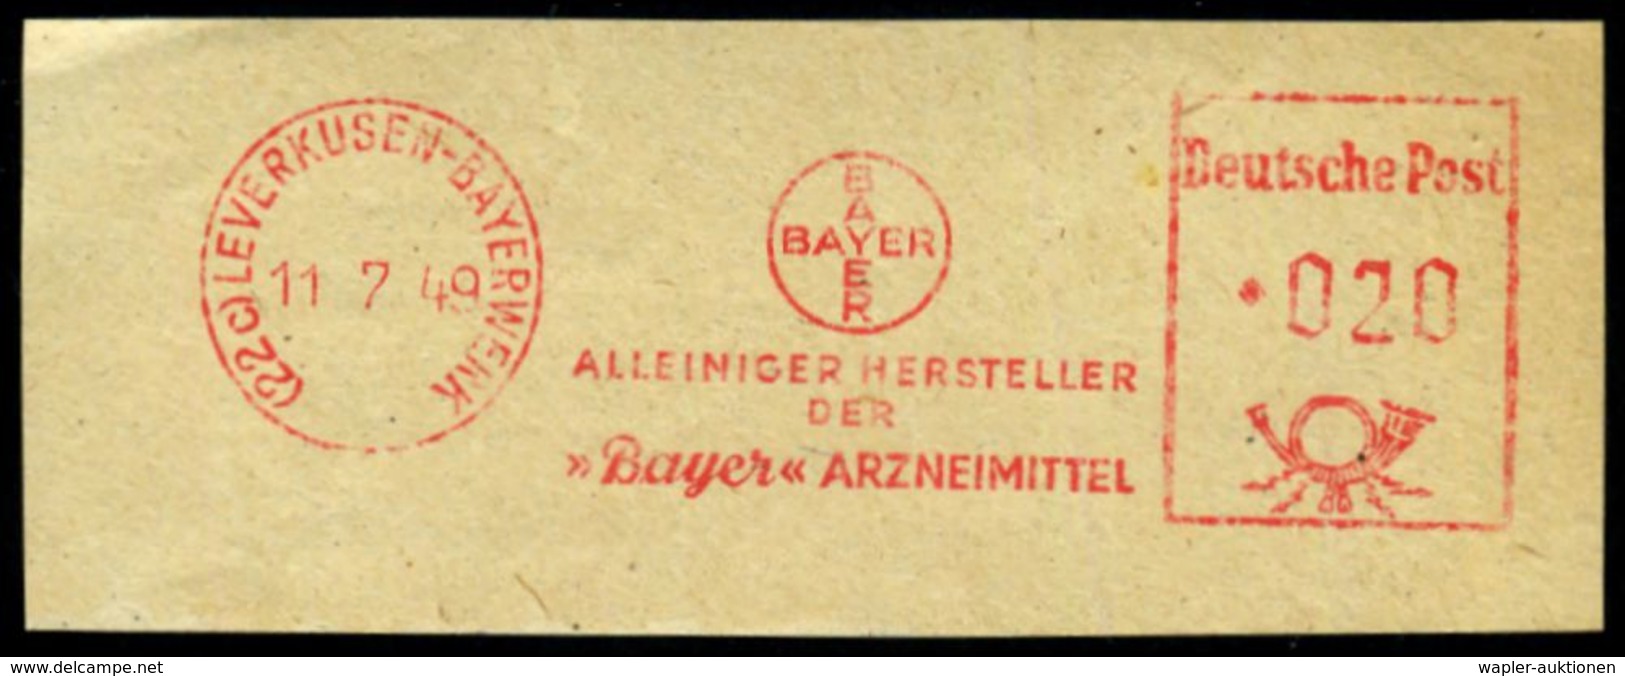 LEVERKUSEN-I.G.WERK.. 1937/70 20 verschiedene AFS des I.G.-Werks Leverkusen bzw. LEVERKUSEN-BAYERWERK.. , 20 kleine Brie